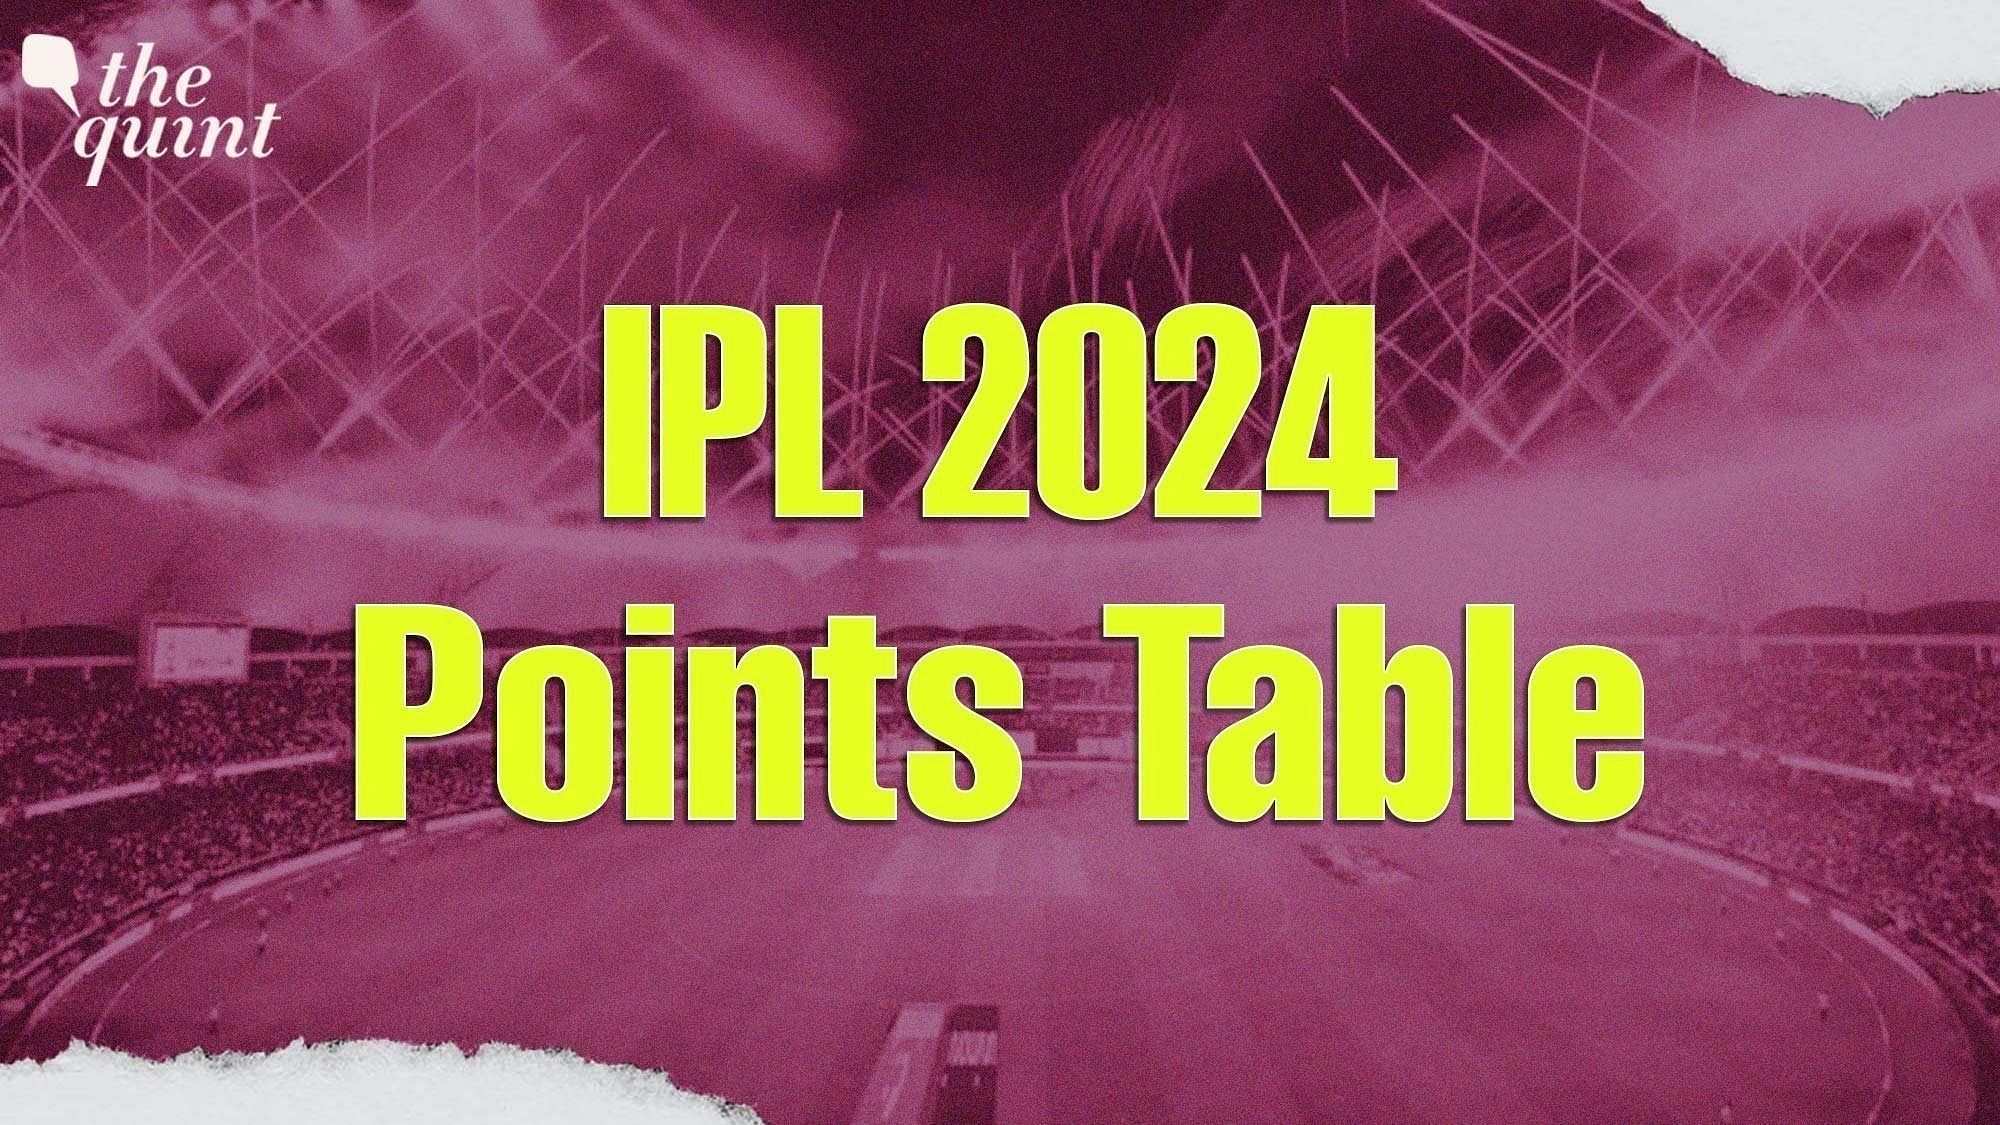 <div class="paragraphs"><p>Check the IPL 2024 Points Table after the MI vs RCB clash on Thursday, 11 April.</p></div>